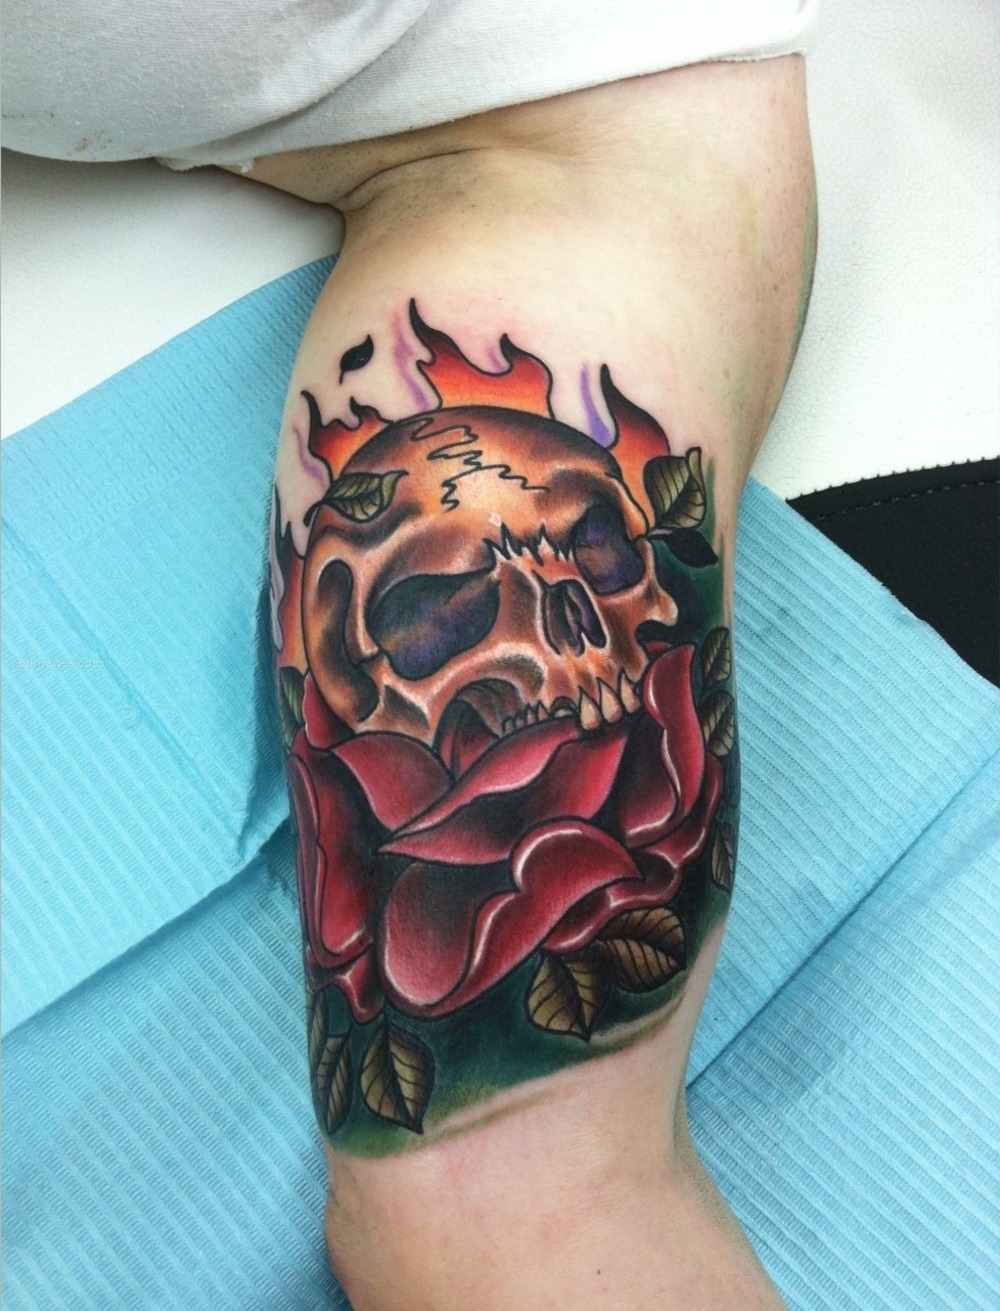 rockiges tattoo für herren mit schädel in flammen und rosen farbig